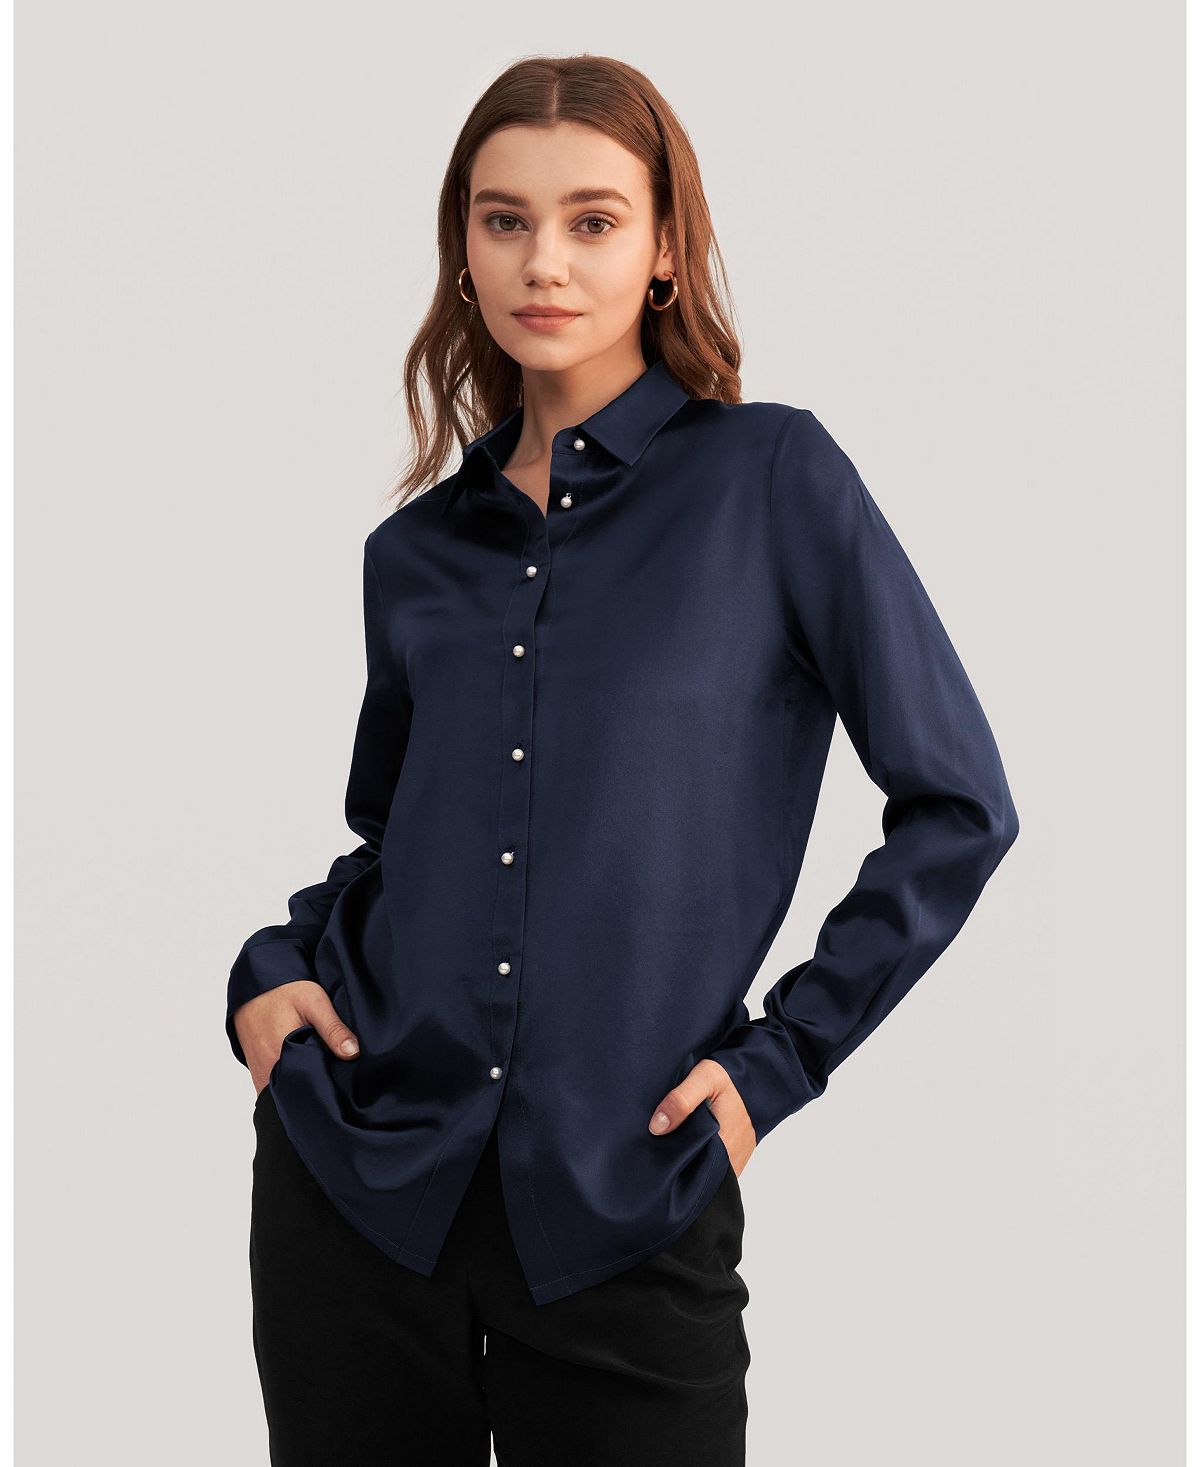 Женская классическая шелковая рубашка с жемчужными пуговицами LILYSILK, синий